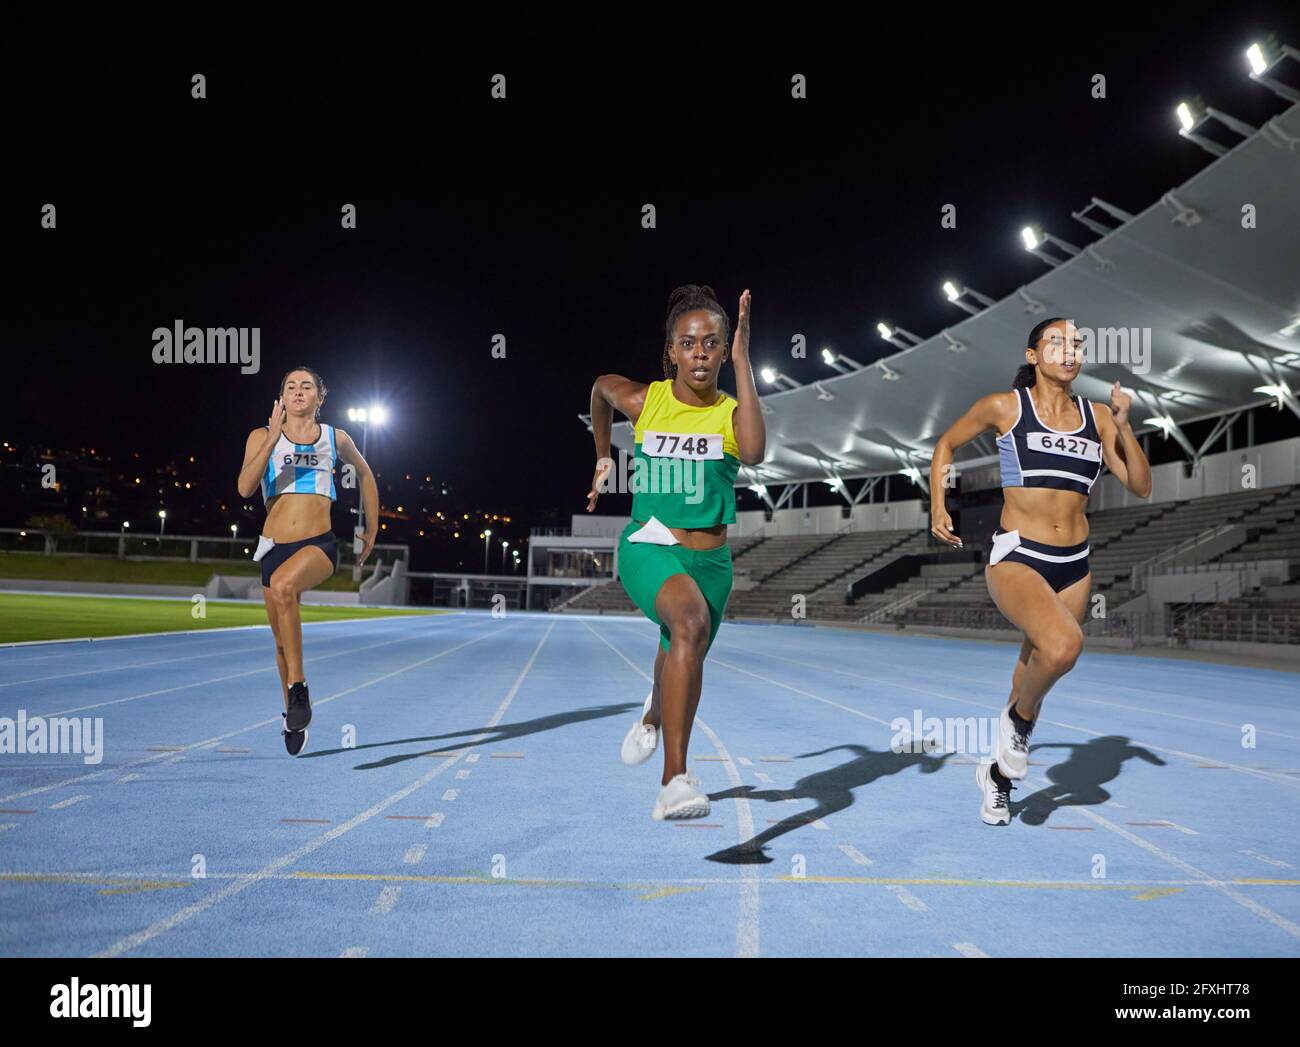 Leichtathletik-Sportlerin, die im Wettkampf auf der Strecke läuft Stockfoto